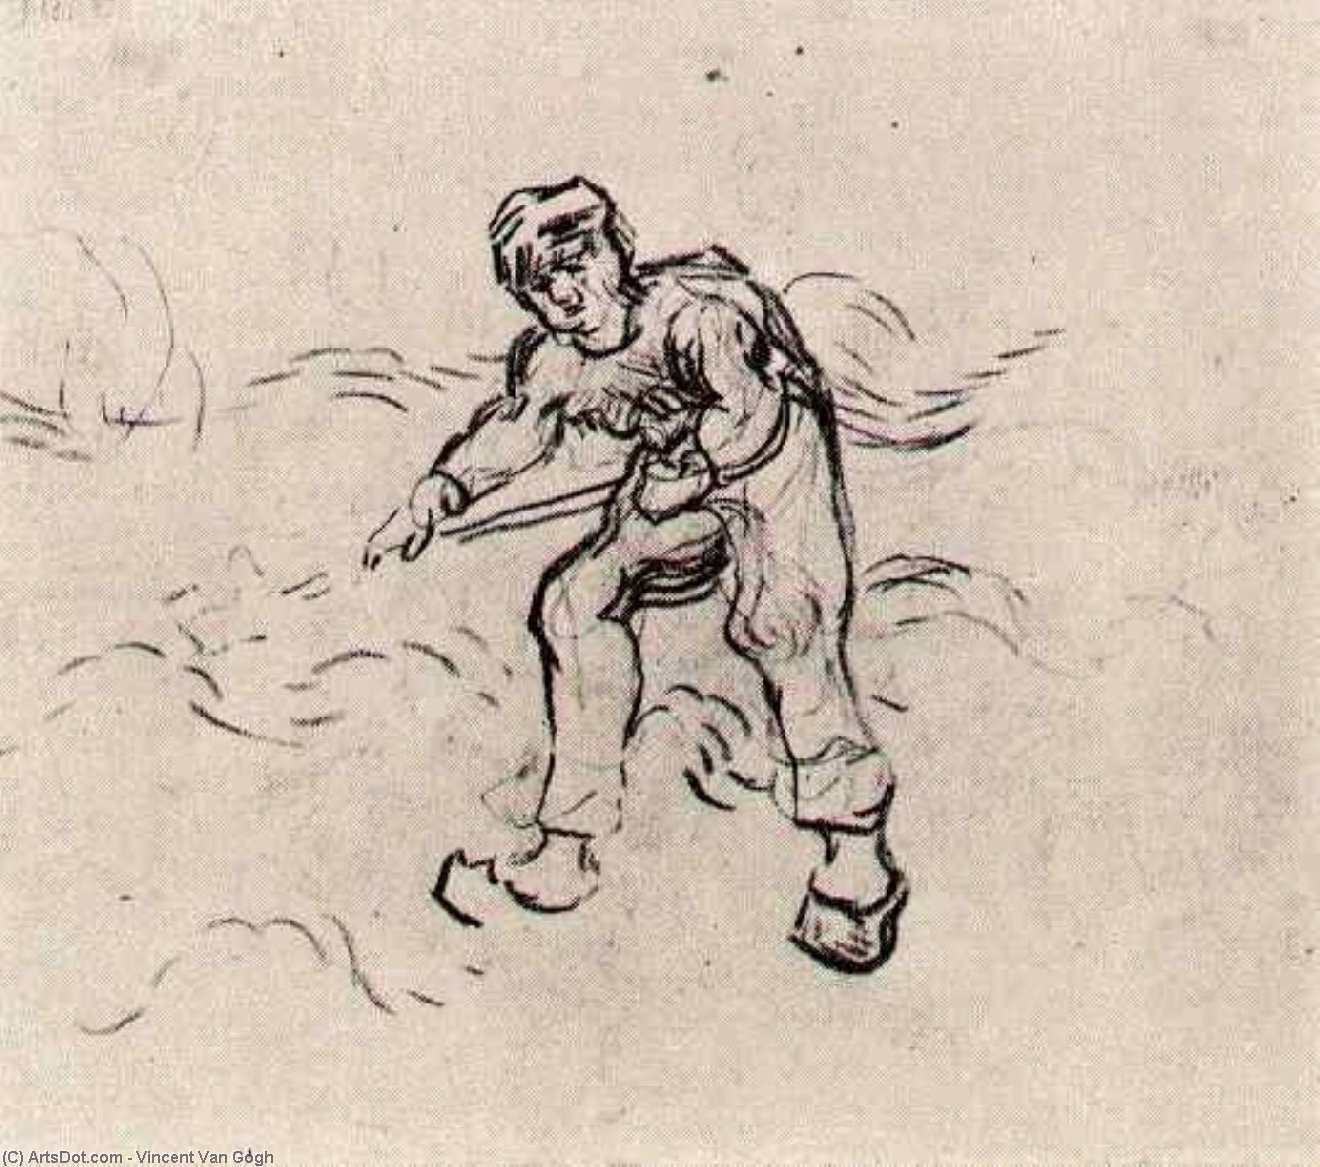 WikiOO.org - Enciklopedija likovnih umjetnosti - Slikarstvo, umjetnička djela Vincent Van Gogh - Sketch of a Peasant Working